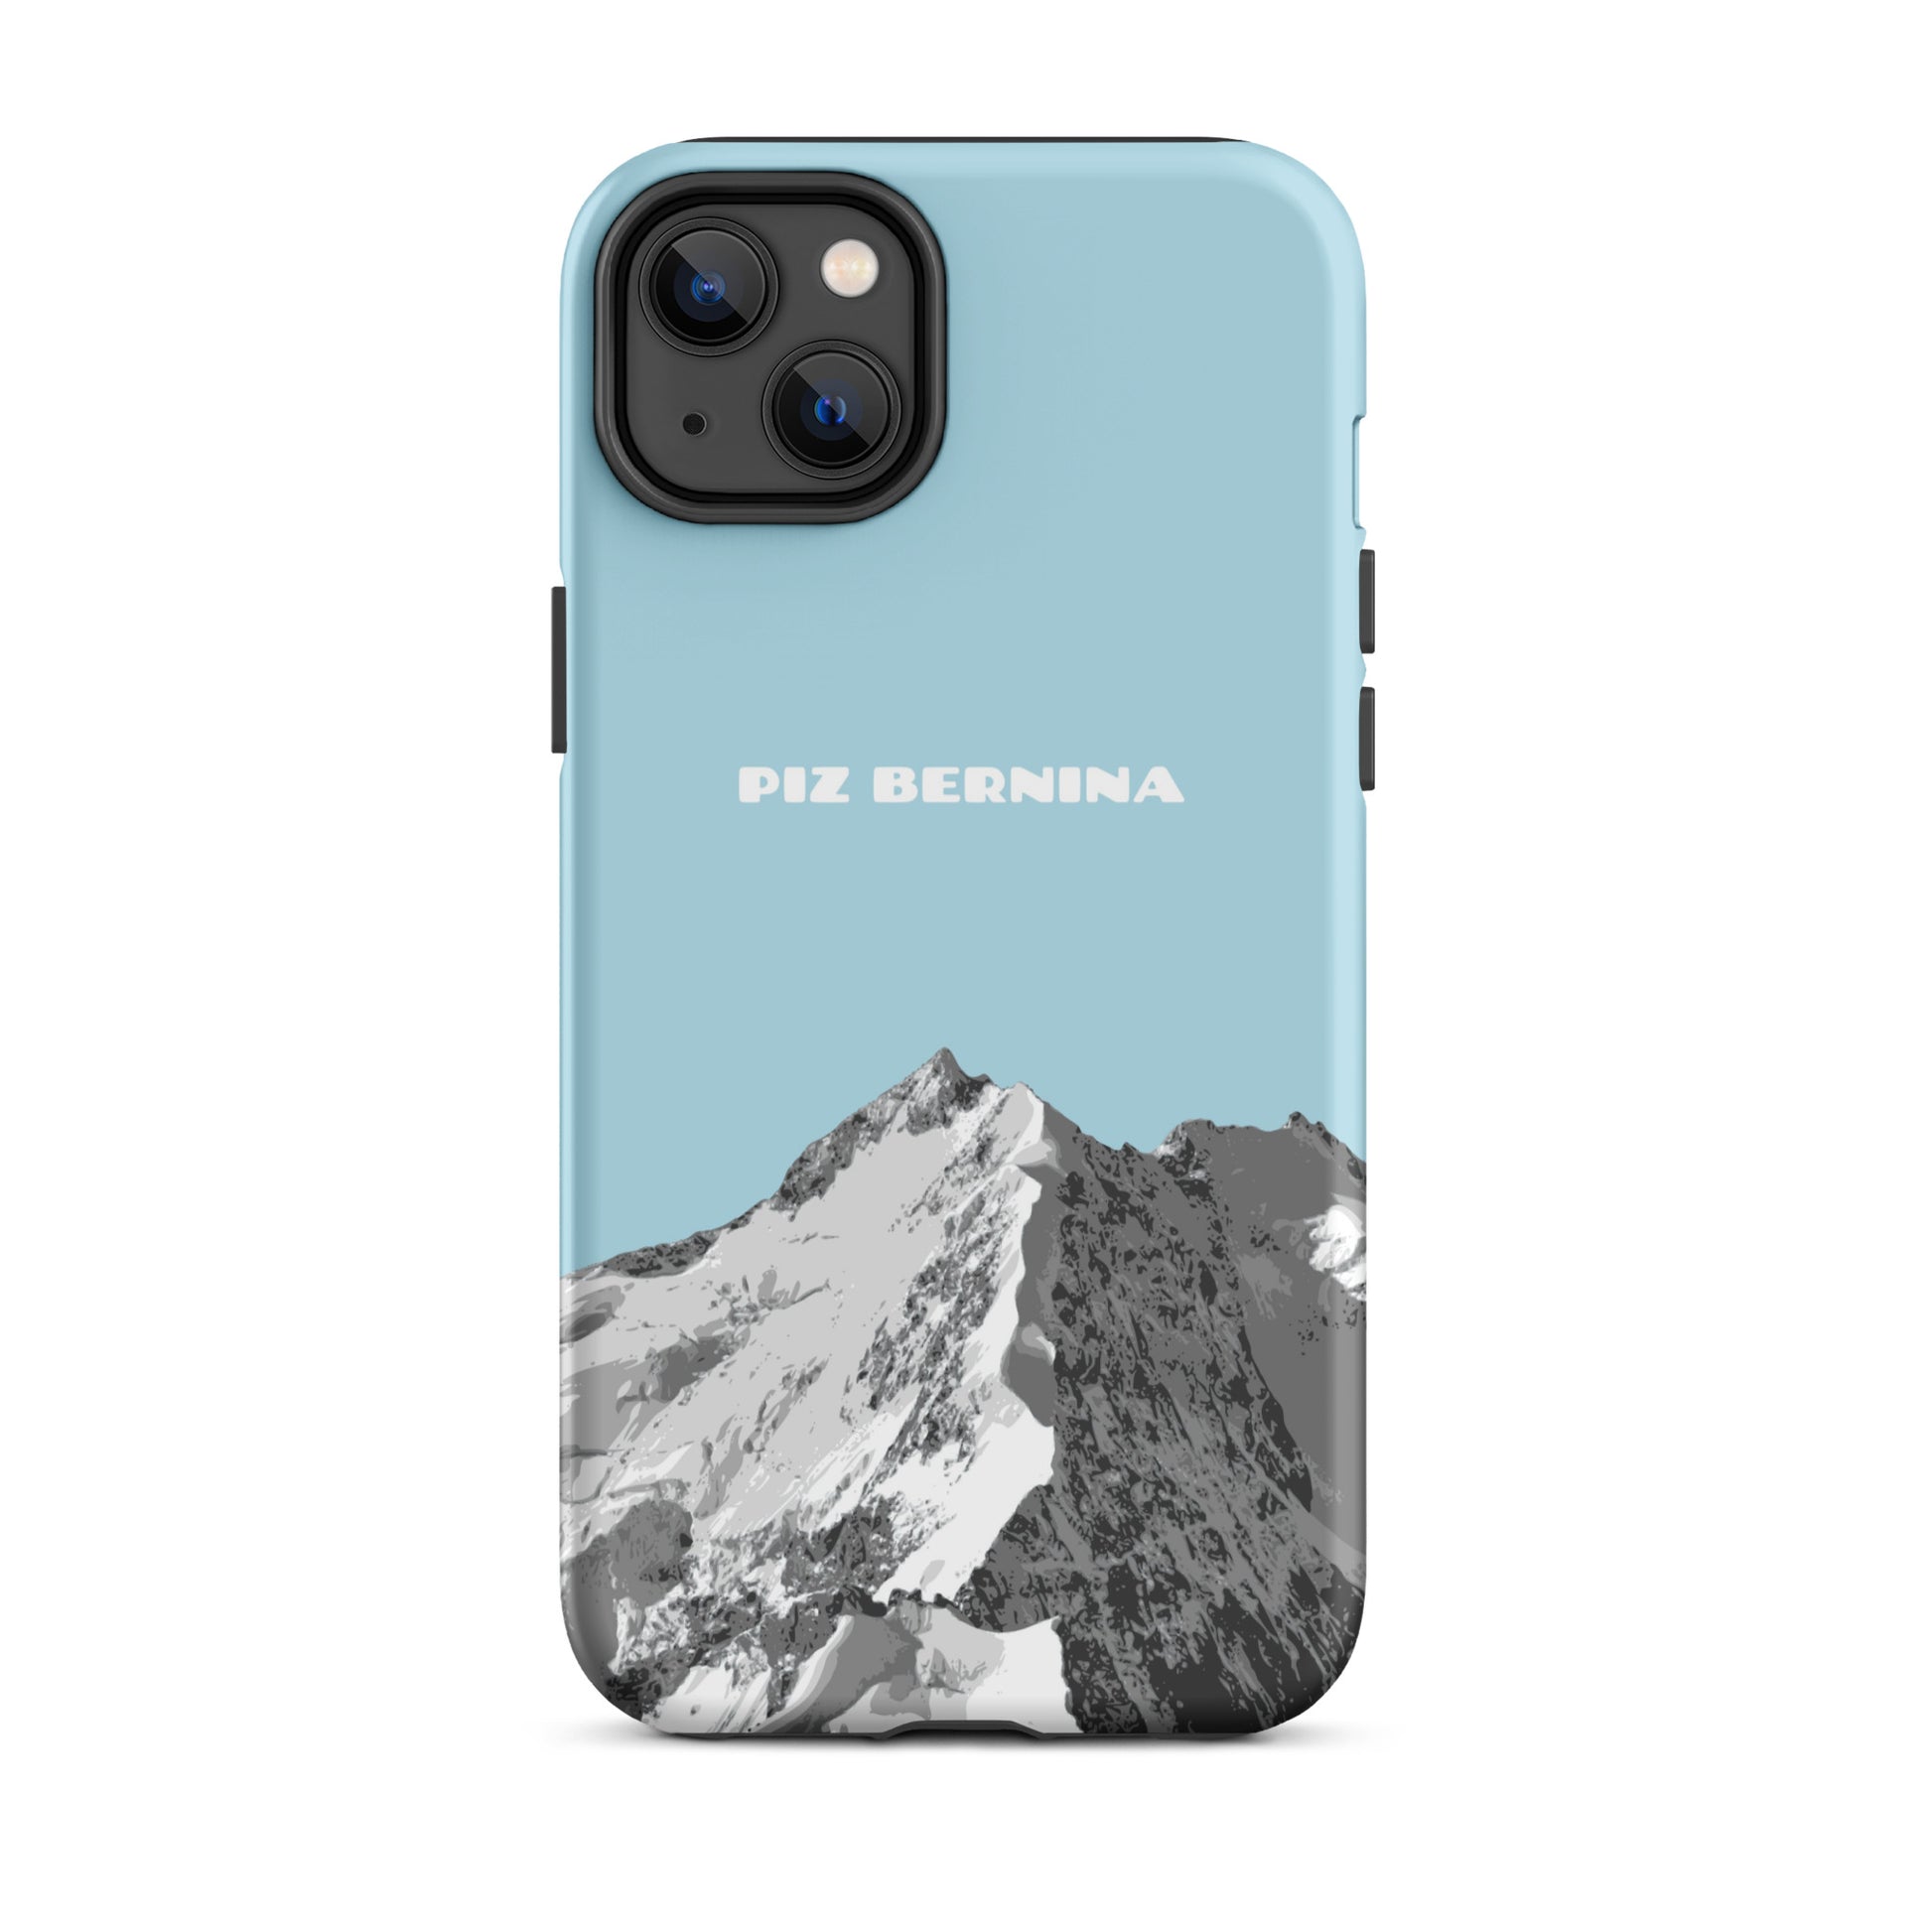 Hülle für das iPhone 14 Plus von Apple in der Farbe Hellblau, dass den Piz Bernina in Graubünden zeigt.